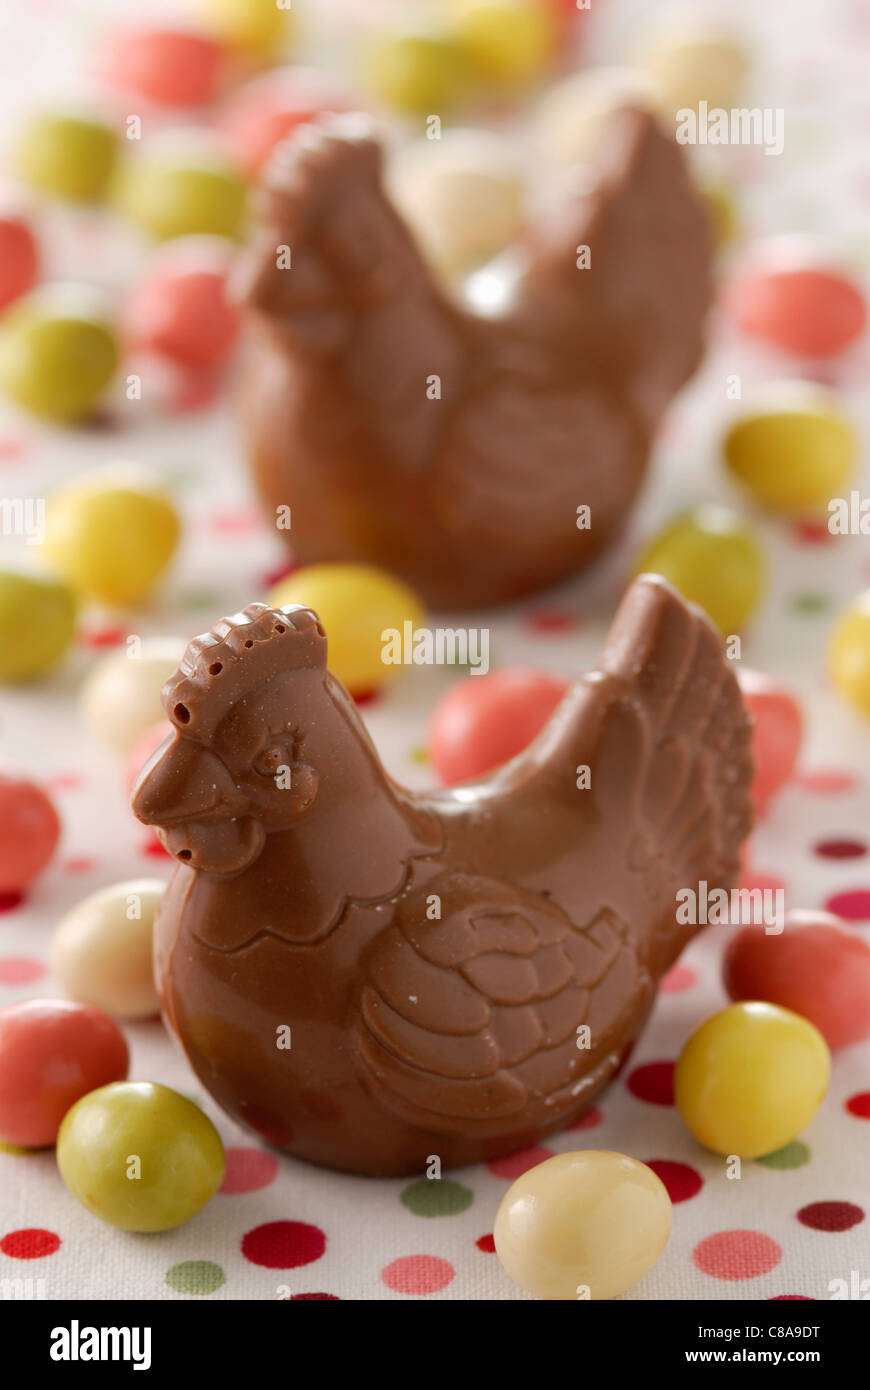 Chocolate hen Stock Photo